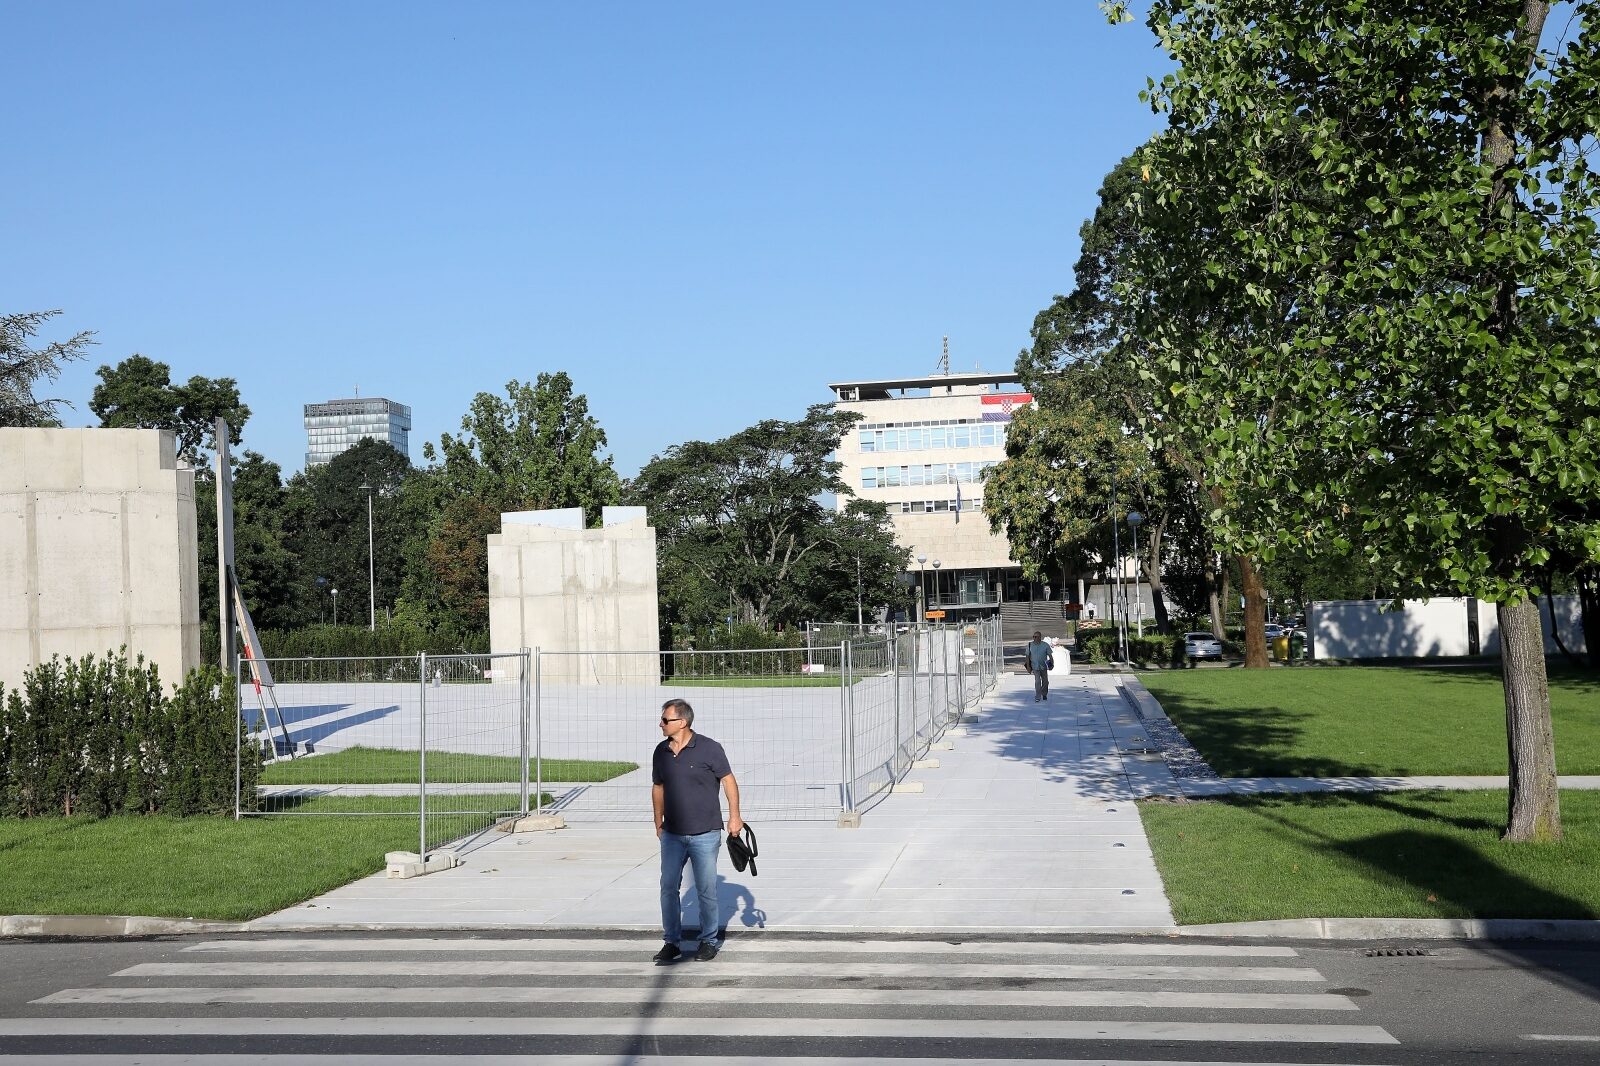 Zagreb: Radovi na izgradnji Spomenika domovini bliže se kraju